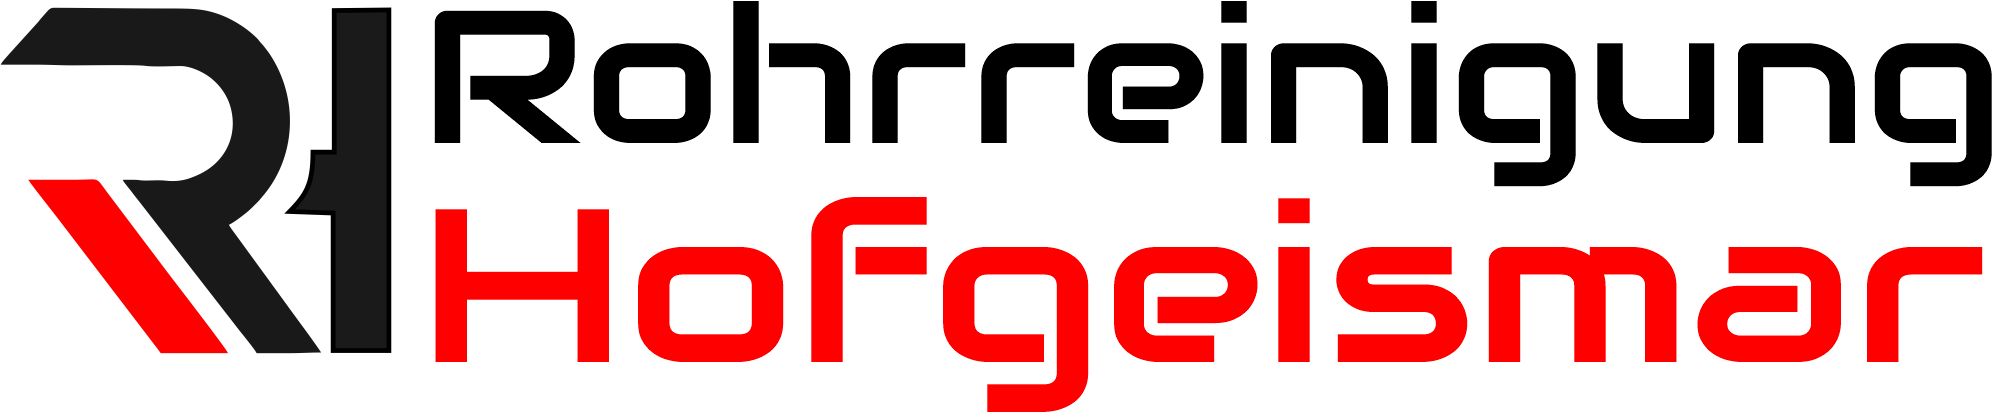 Rohrreinigung Hofgeismar Logo